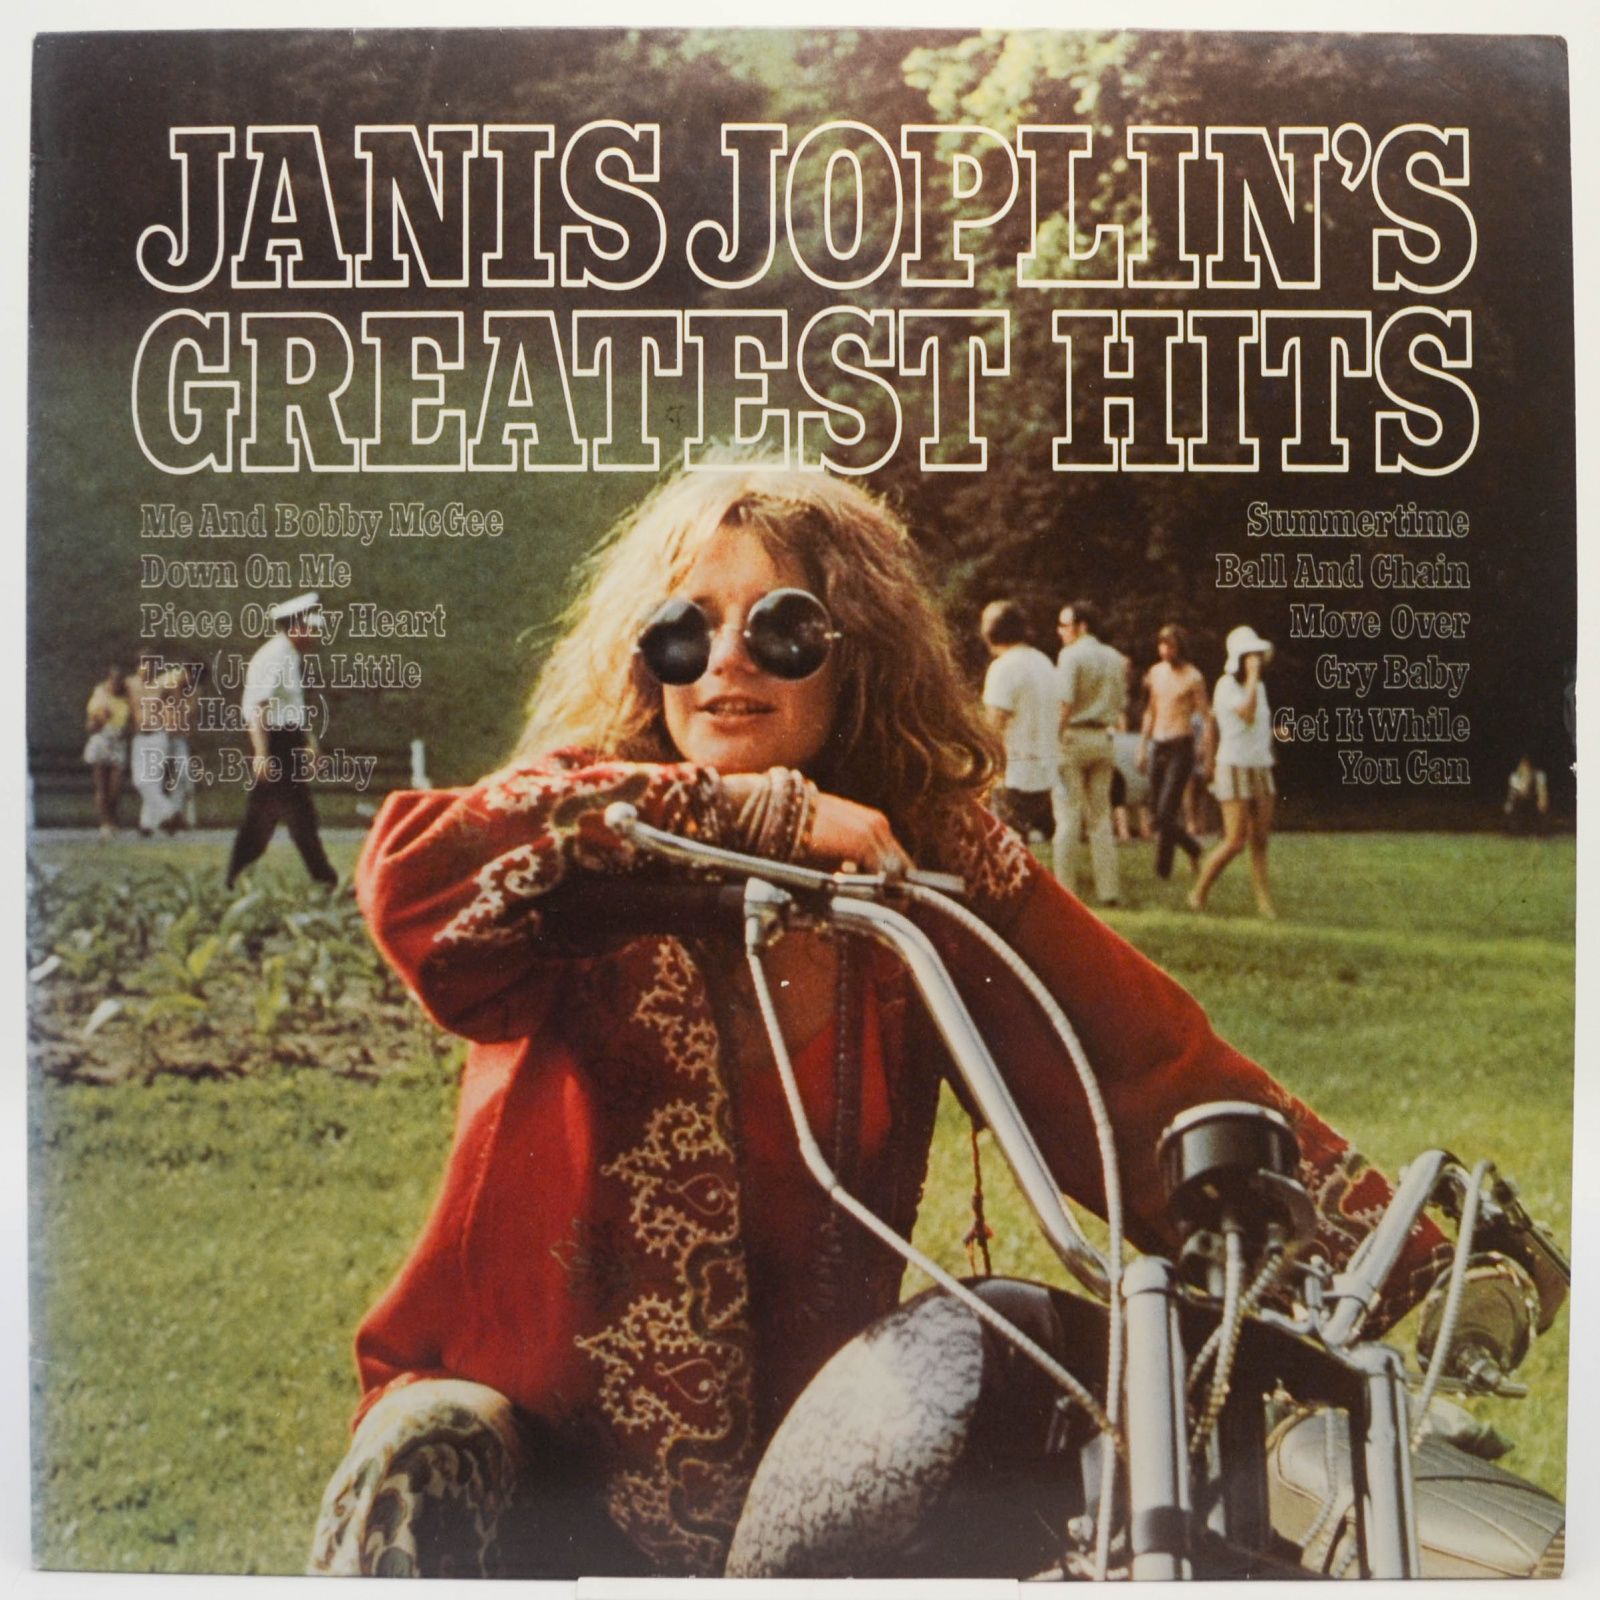 Janis Joplin's Greatest Hits, 1973